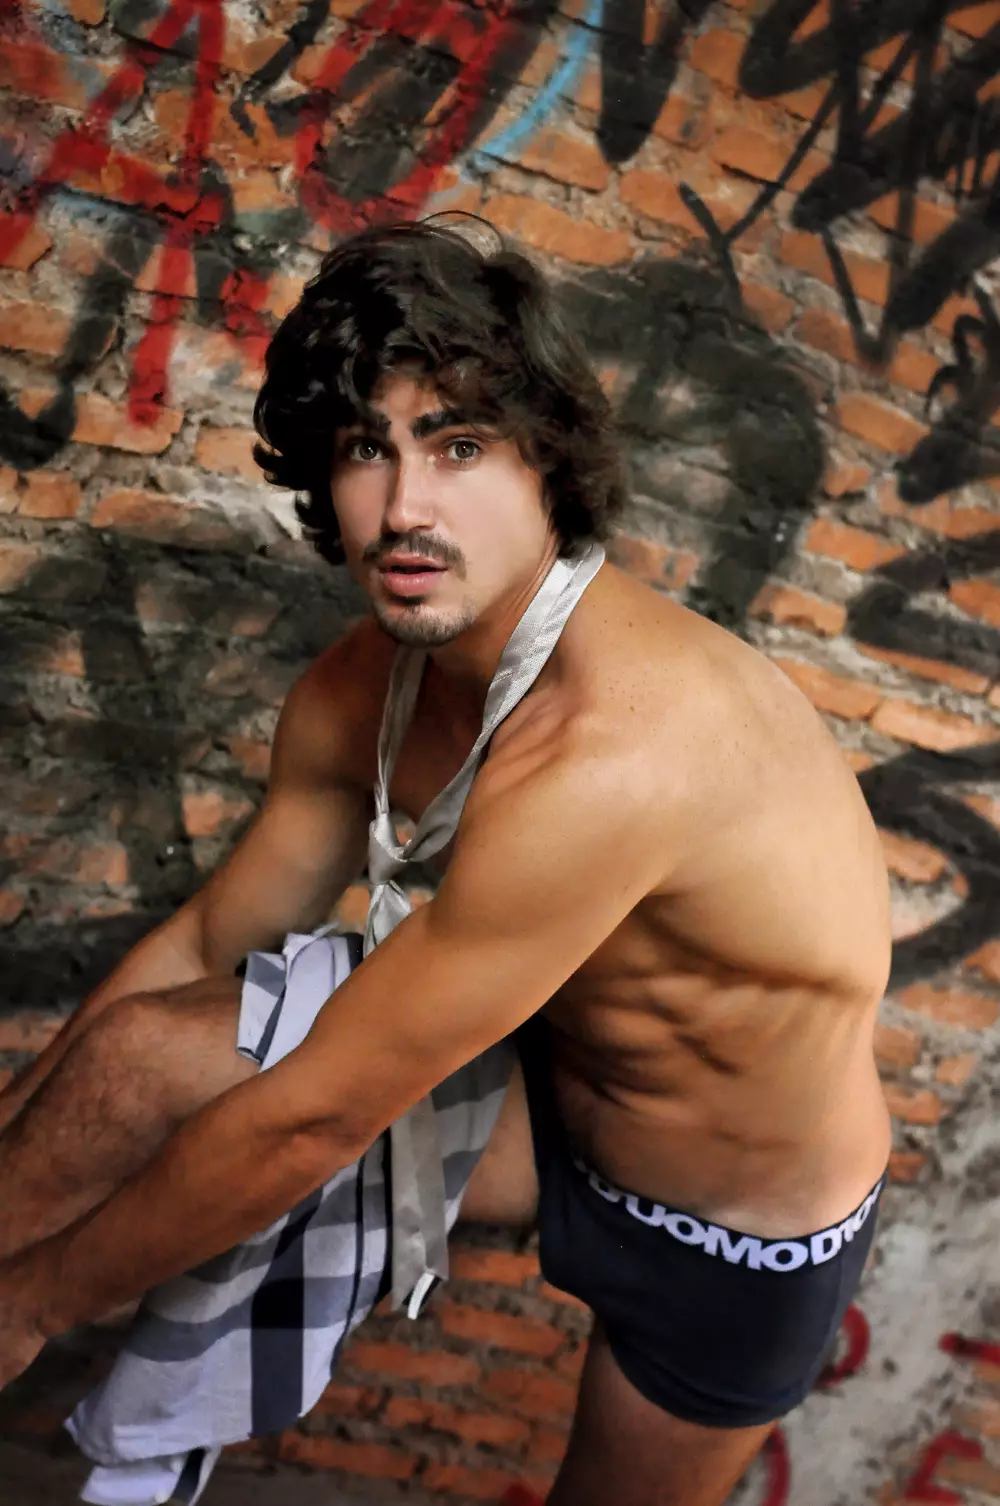 У нас є справжній сексуальний бразильський чоловік-модель Феліпе Отто Ізінг, знятий Віллом Мендонса. Феліпе 26 років, він підписаний Closer Models, безперечно має гарне обличчя та брови, підтягнуте тіло, типове для бразильців.